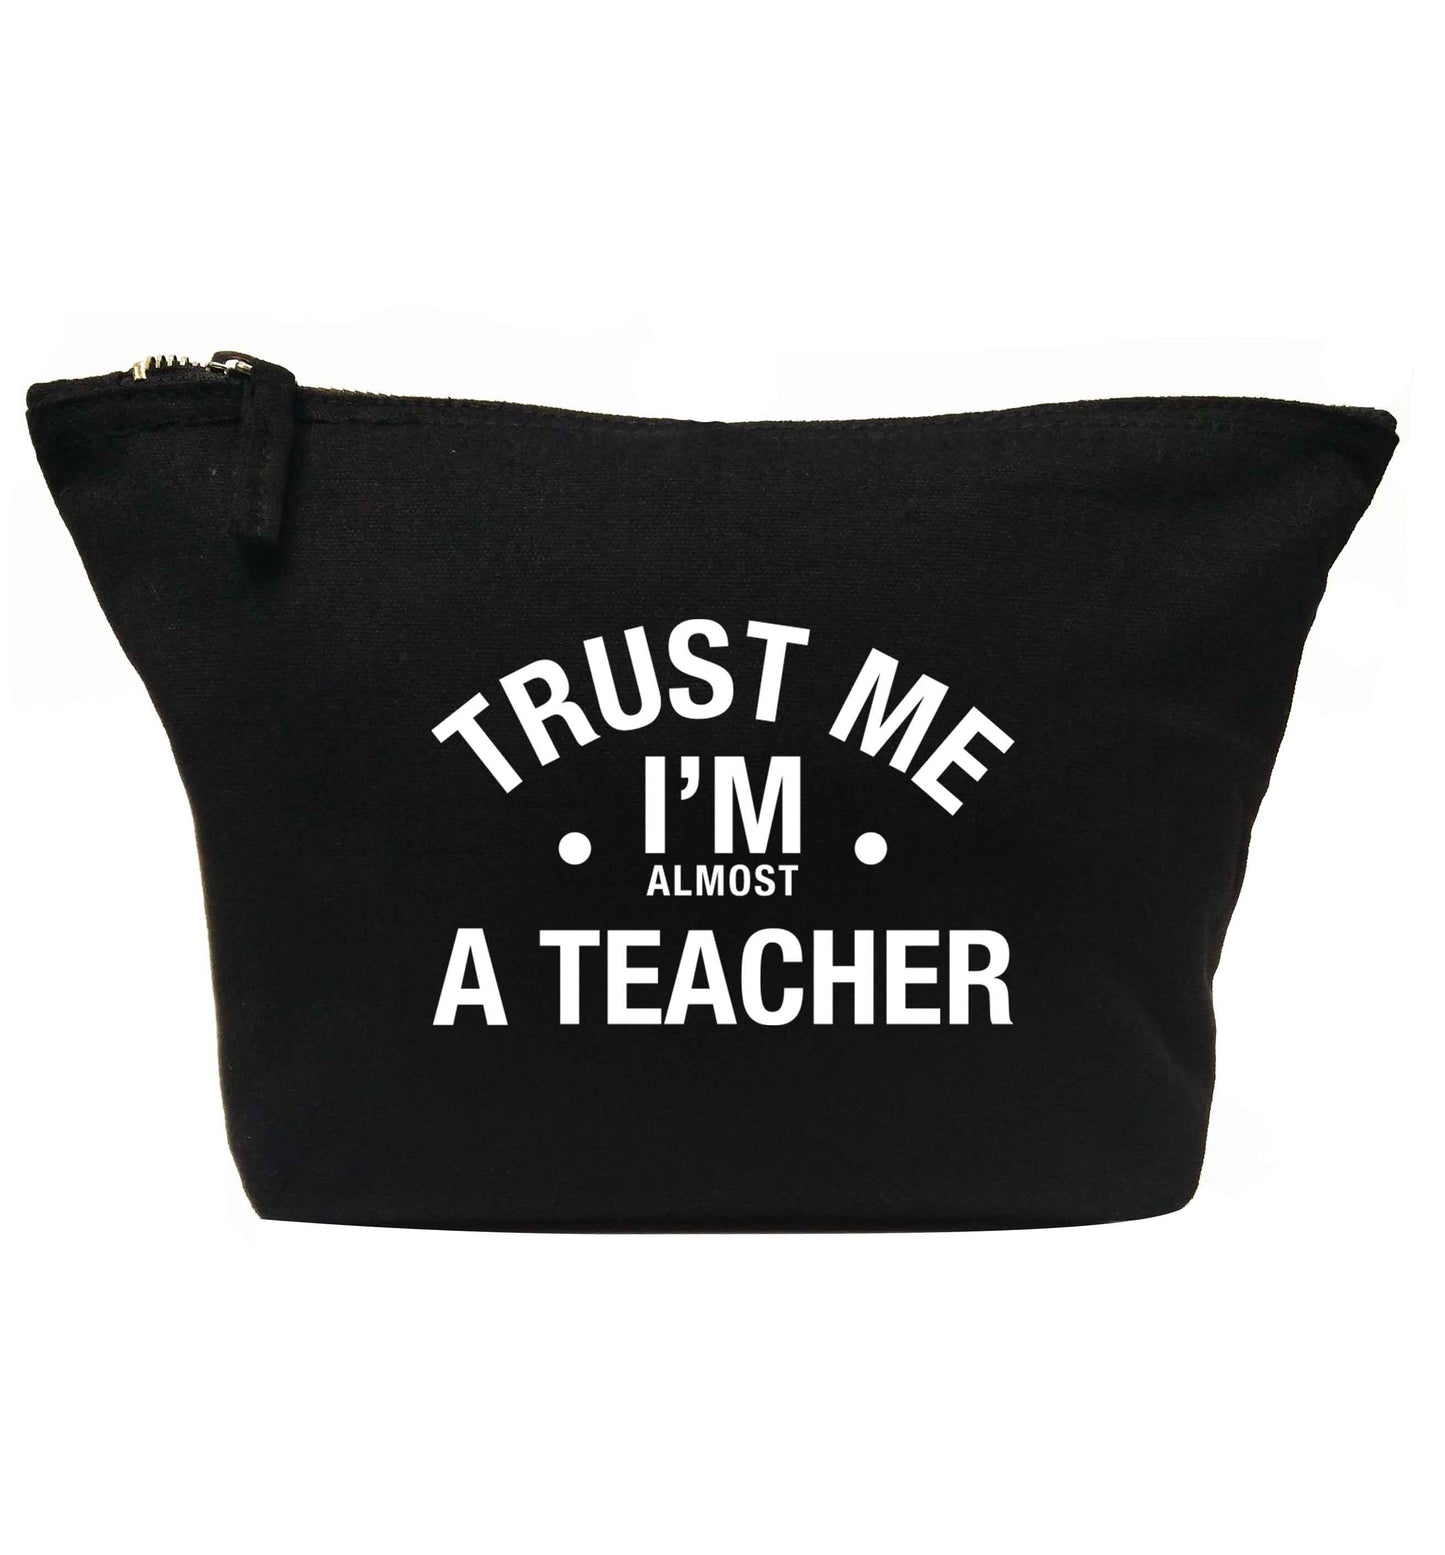 Trust me I'm almost a teacher | Makeup / wash bag